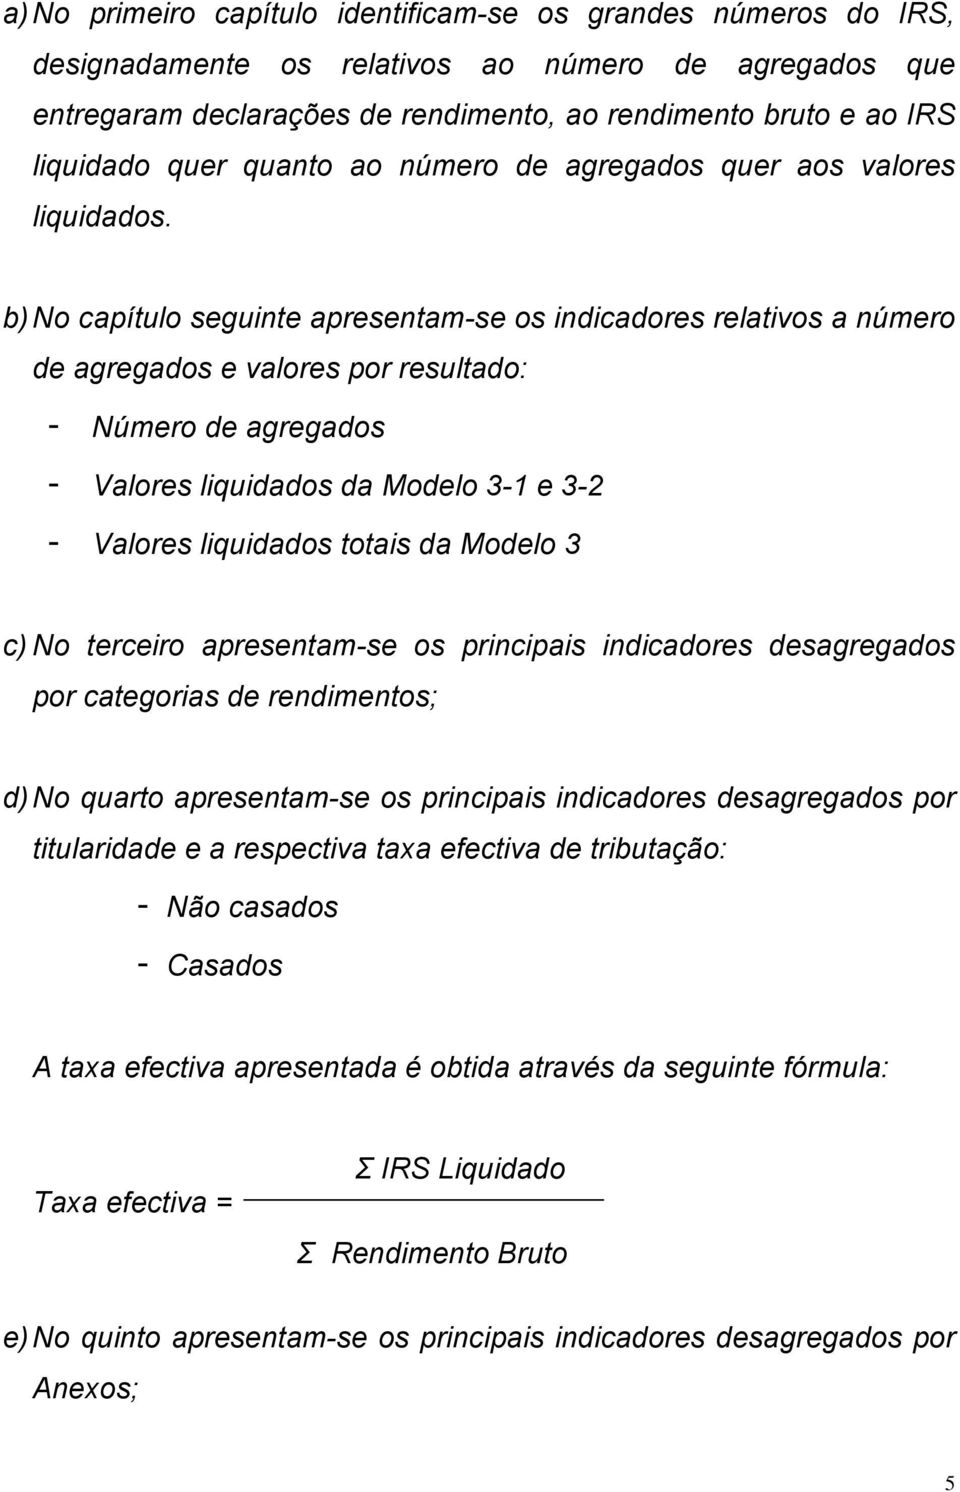 b) No capítulo seguinte apresentam-se os indicadores relativos a número de agregados e valores por resultado: - Número de agregados - Valores liquidados da Modelo 3-1 e 3-2 - Valores liquidados